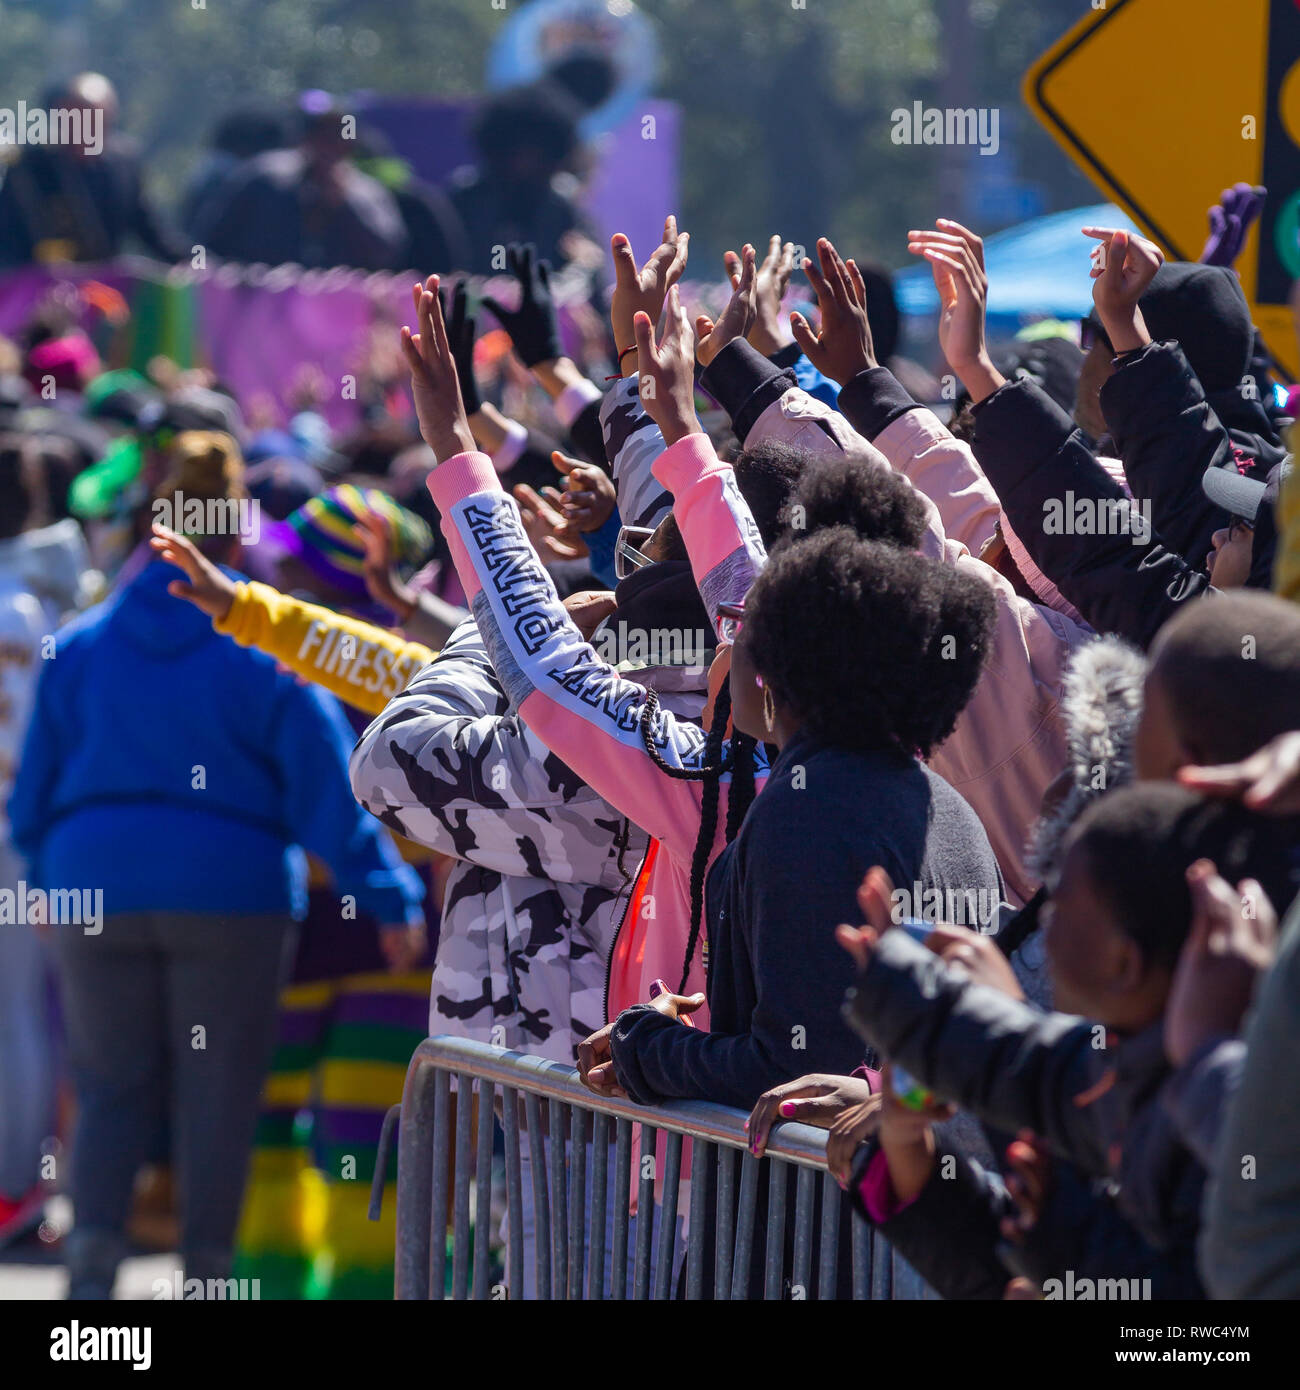 Nueva Orleans, LA, EE.UU. el 5 de marzo de 2019 las ayudas sociales Zulu & Pleasure Club tomaron las calles el Martes Gordo, con sus tradicionales trajes de hierba y faldas y firma Mardi Gras lanza el coco pintados a mano. Crédito: Tom Pumphret/Alamy Live News Foto de stock